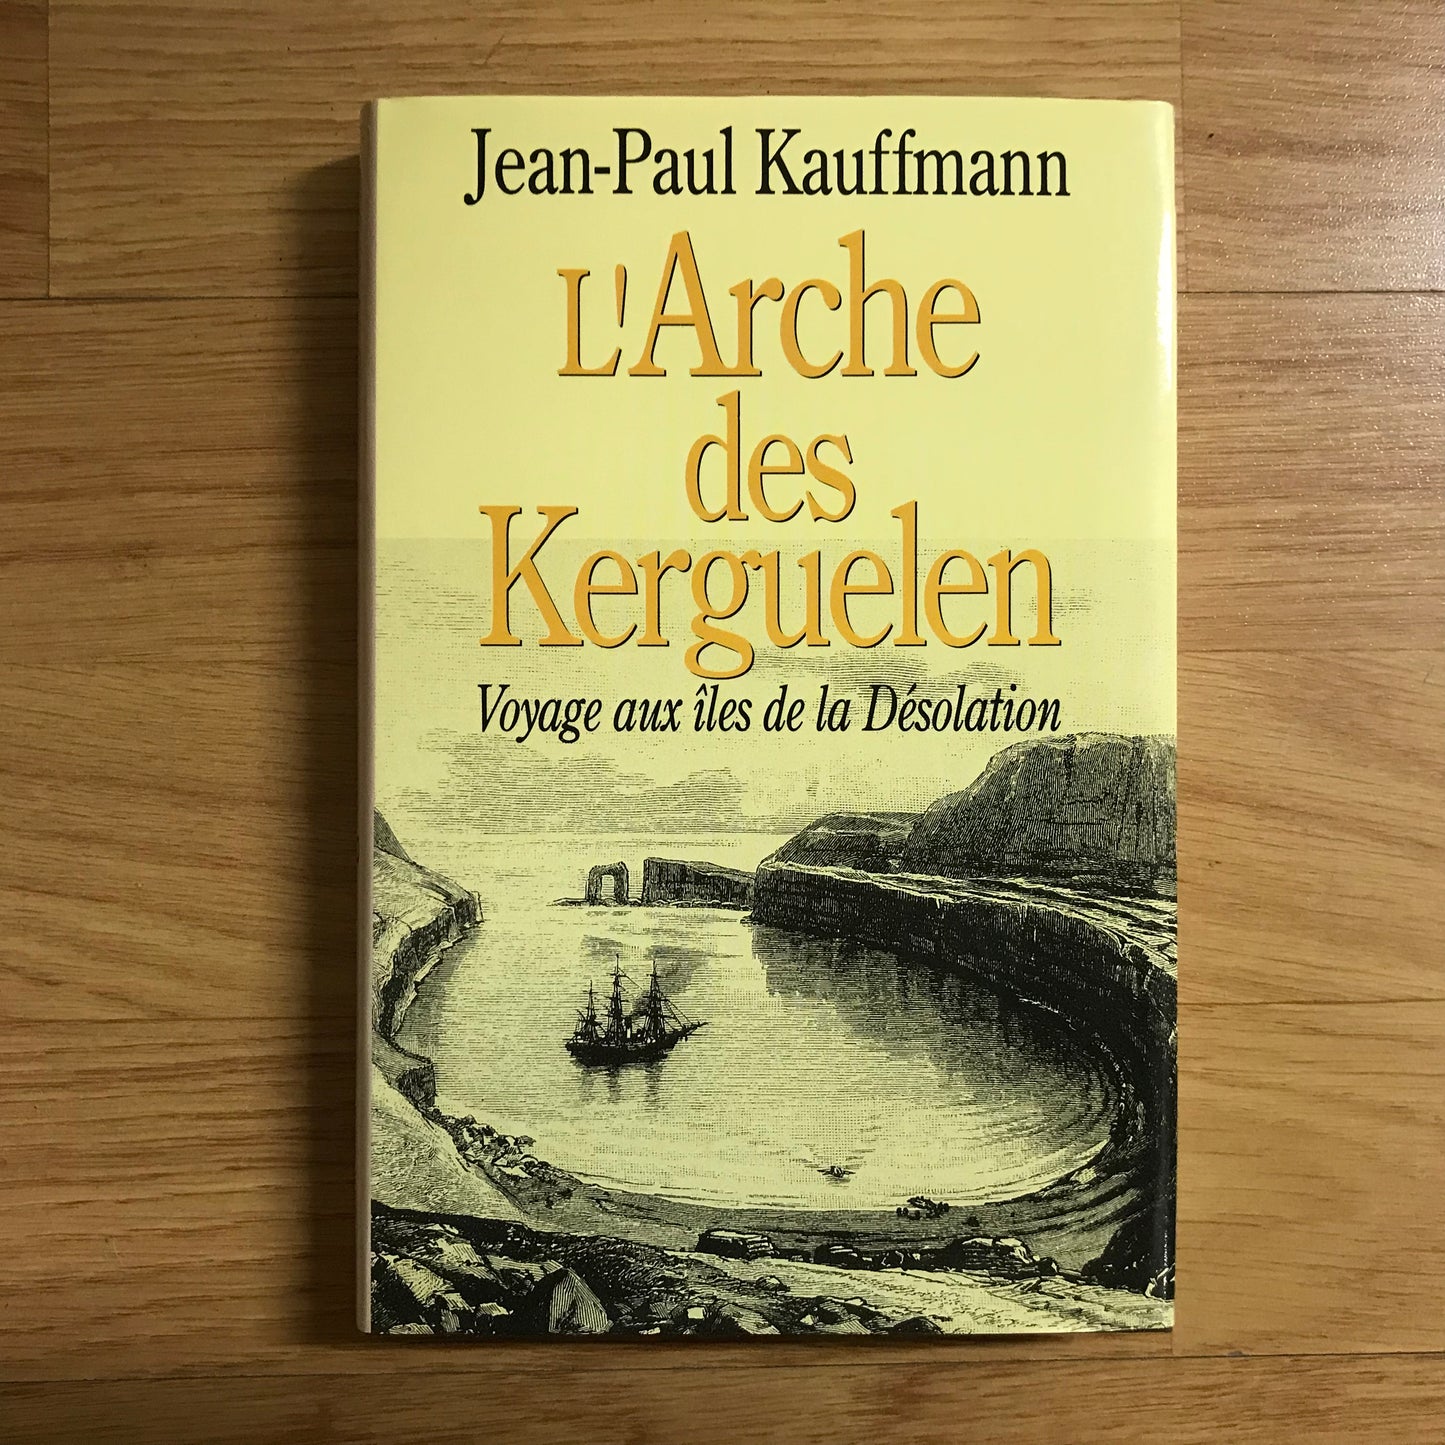 Kauffmann, Jean-Paul - L’Arche des Kergelen, Yoyage aux îles de la désolation